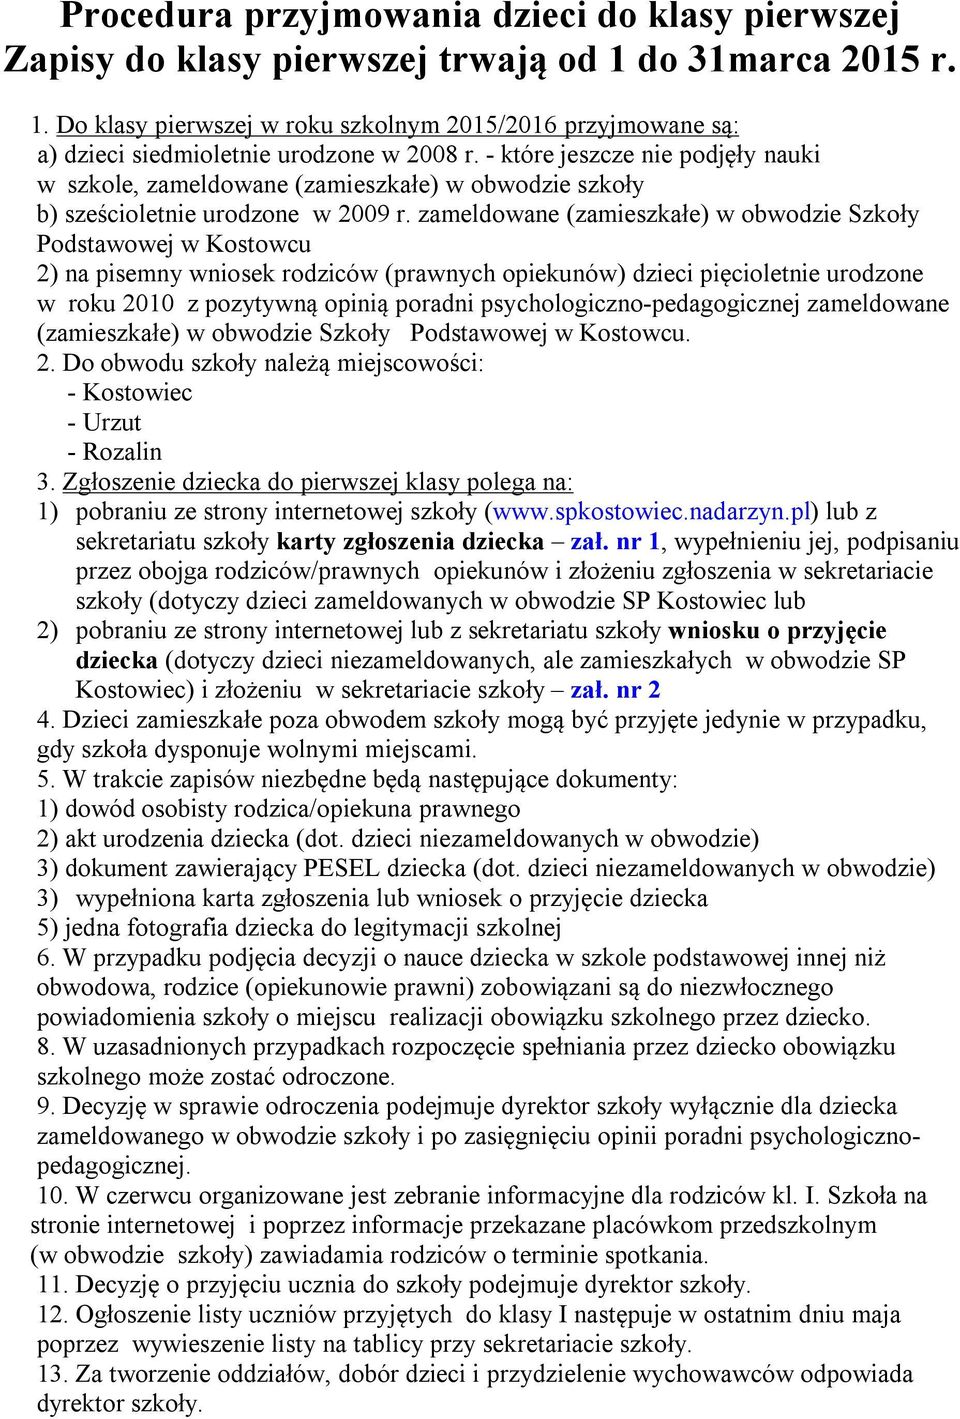 zameldowane (zamieszkałe) w obwodzie Szkoły Podstawowej w Kostowcu 2) na pisemny wniosek rodziców (prawnych opiekunów) dzieci pięcioletnie urodzone w roku 2010 z pozytywną opinią poradni